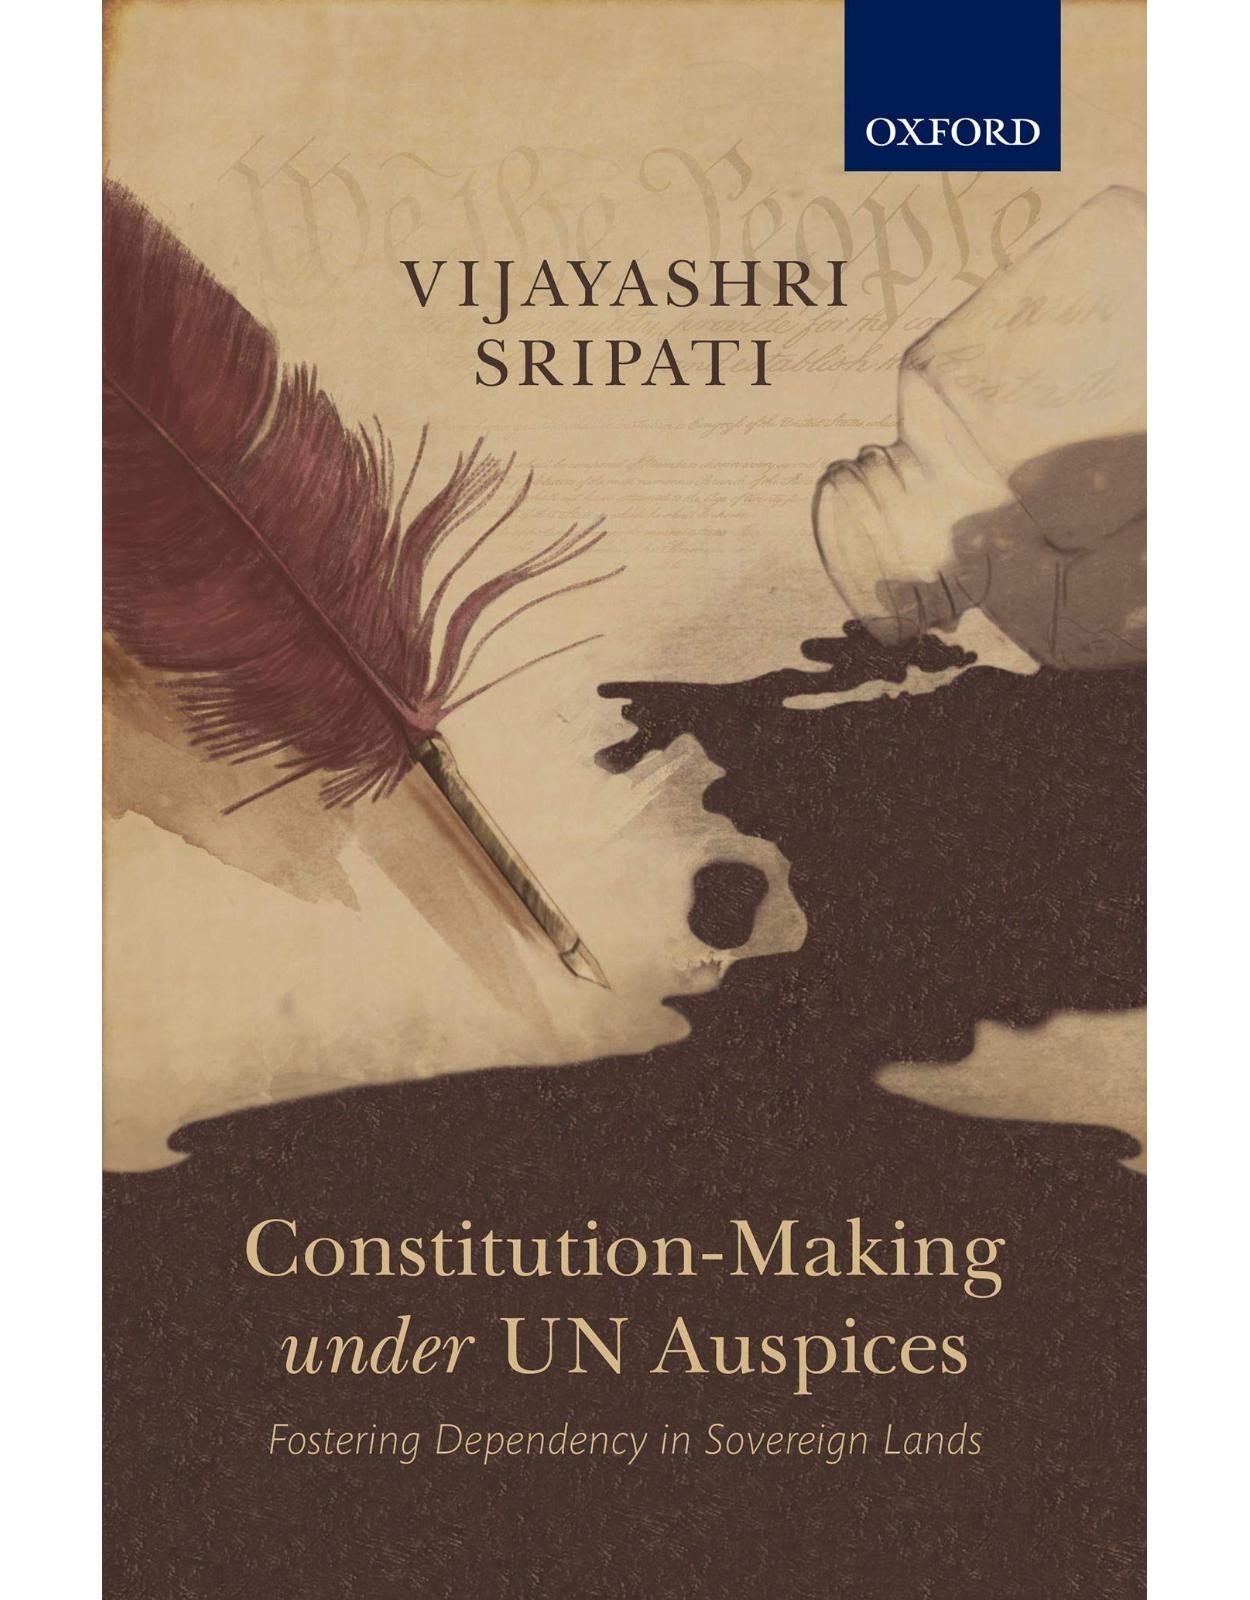 Constitution-Making under UN Auspices